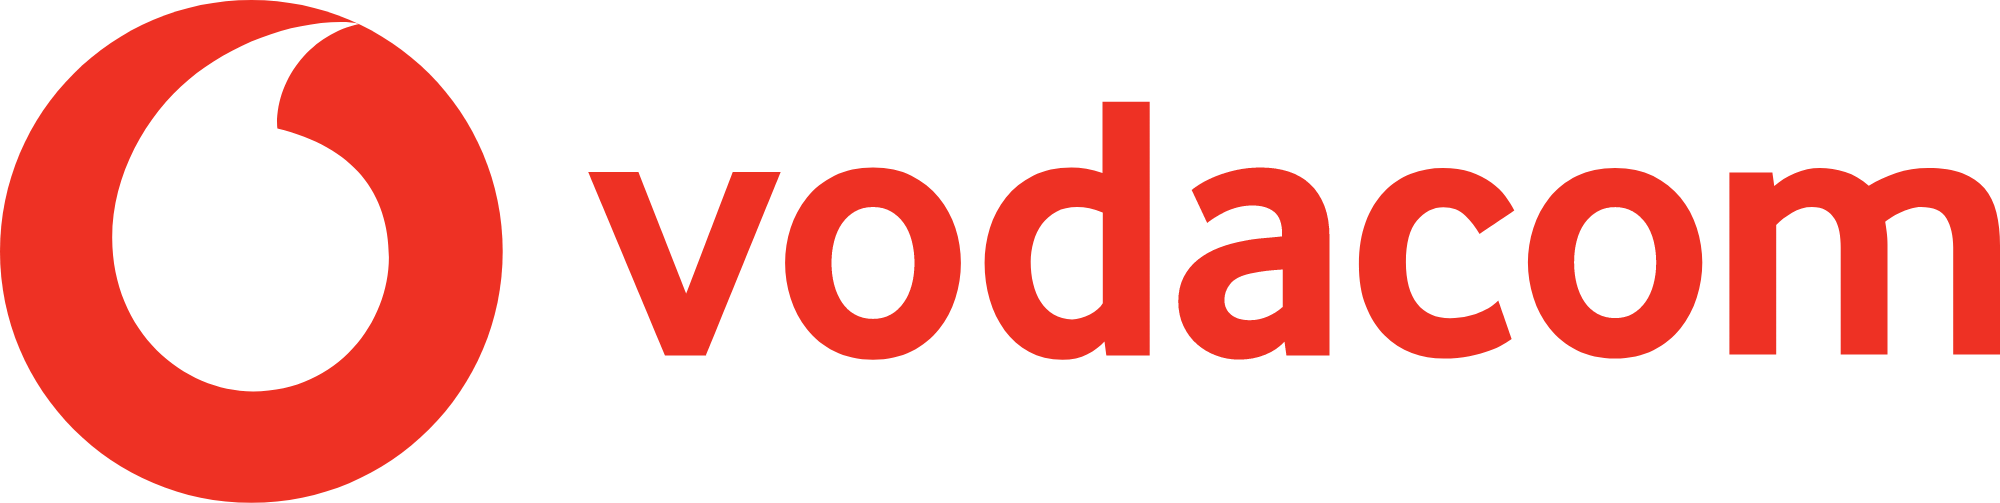 Vodacom
 logo large (transparent PNG)